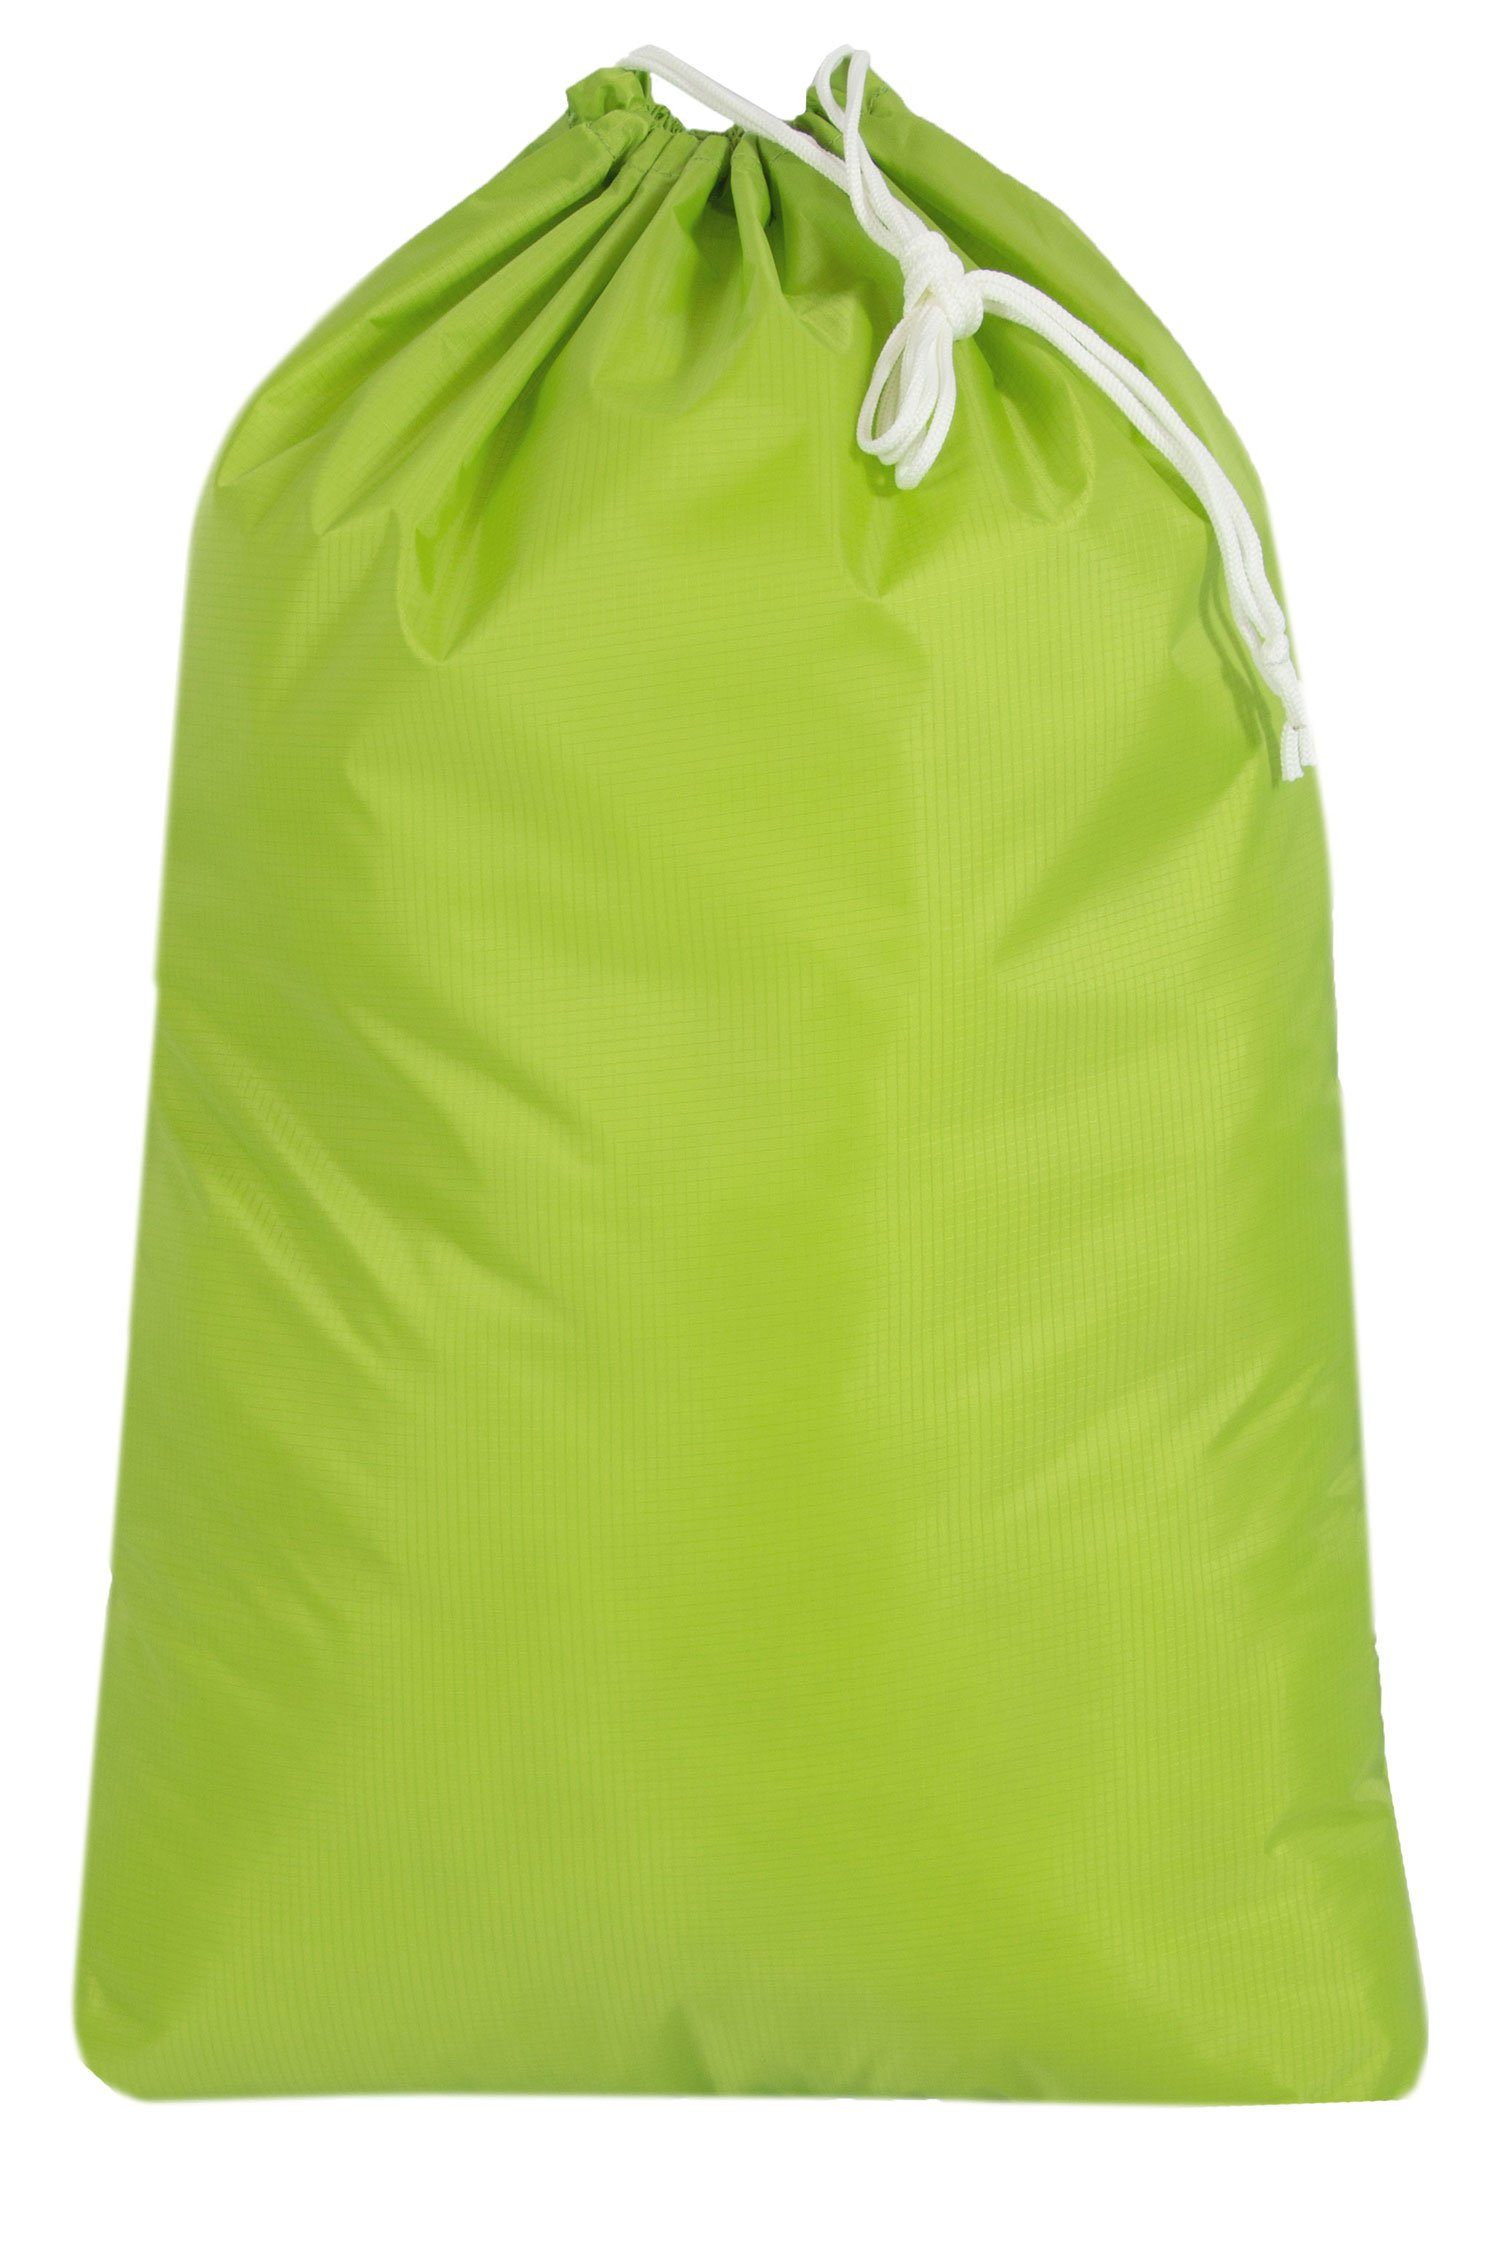 ZOLLNER24 Wäschesack (1 St), 100% Polyester, mit Kordelzug, wasserabweisend grün